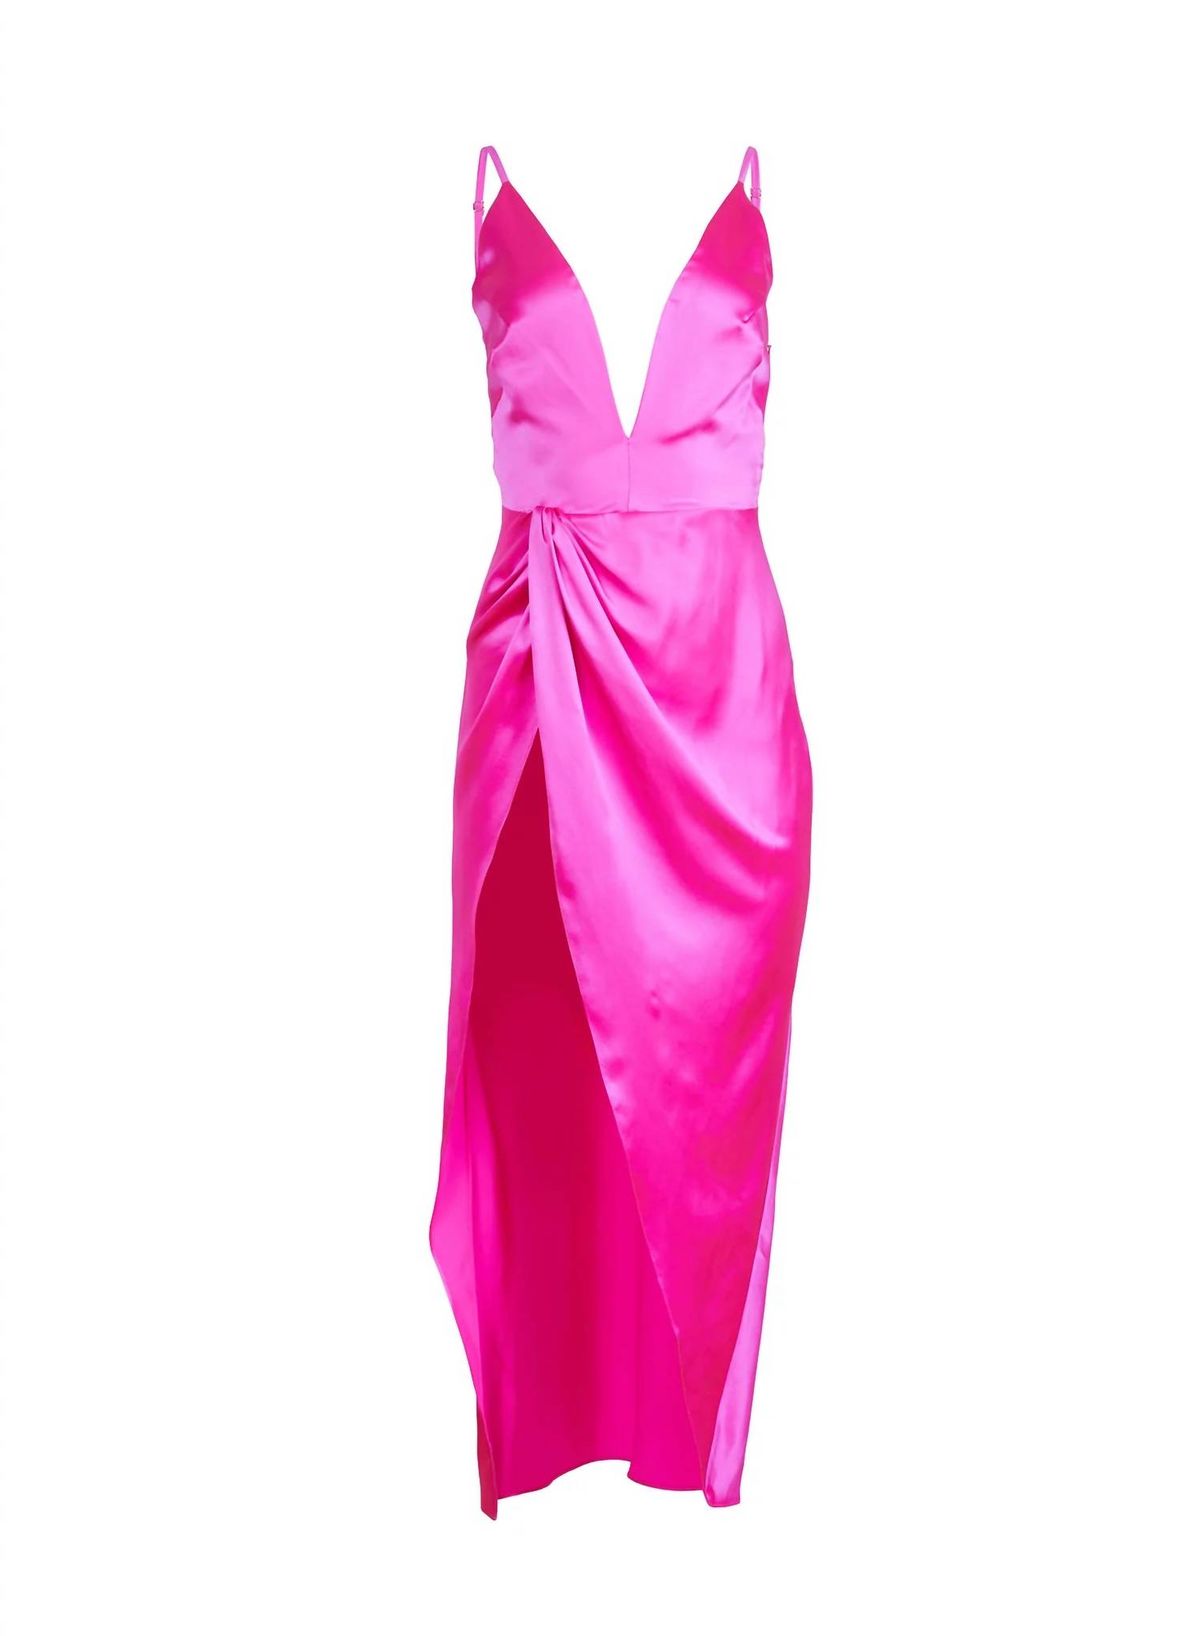 Style 1-3393943617-1901 Fleur Du Mal Size 6 Plunge Satin Pink Side Slit Dress on Queenly